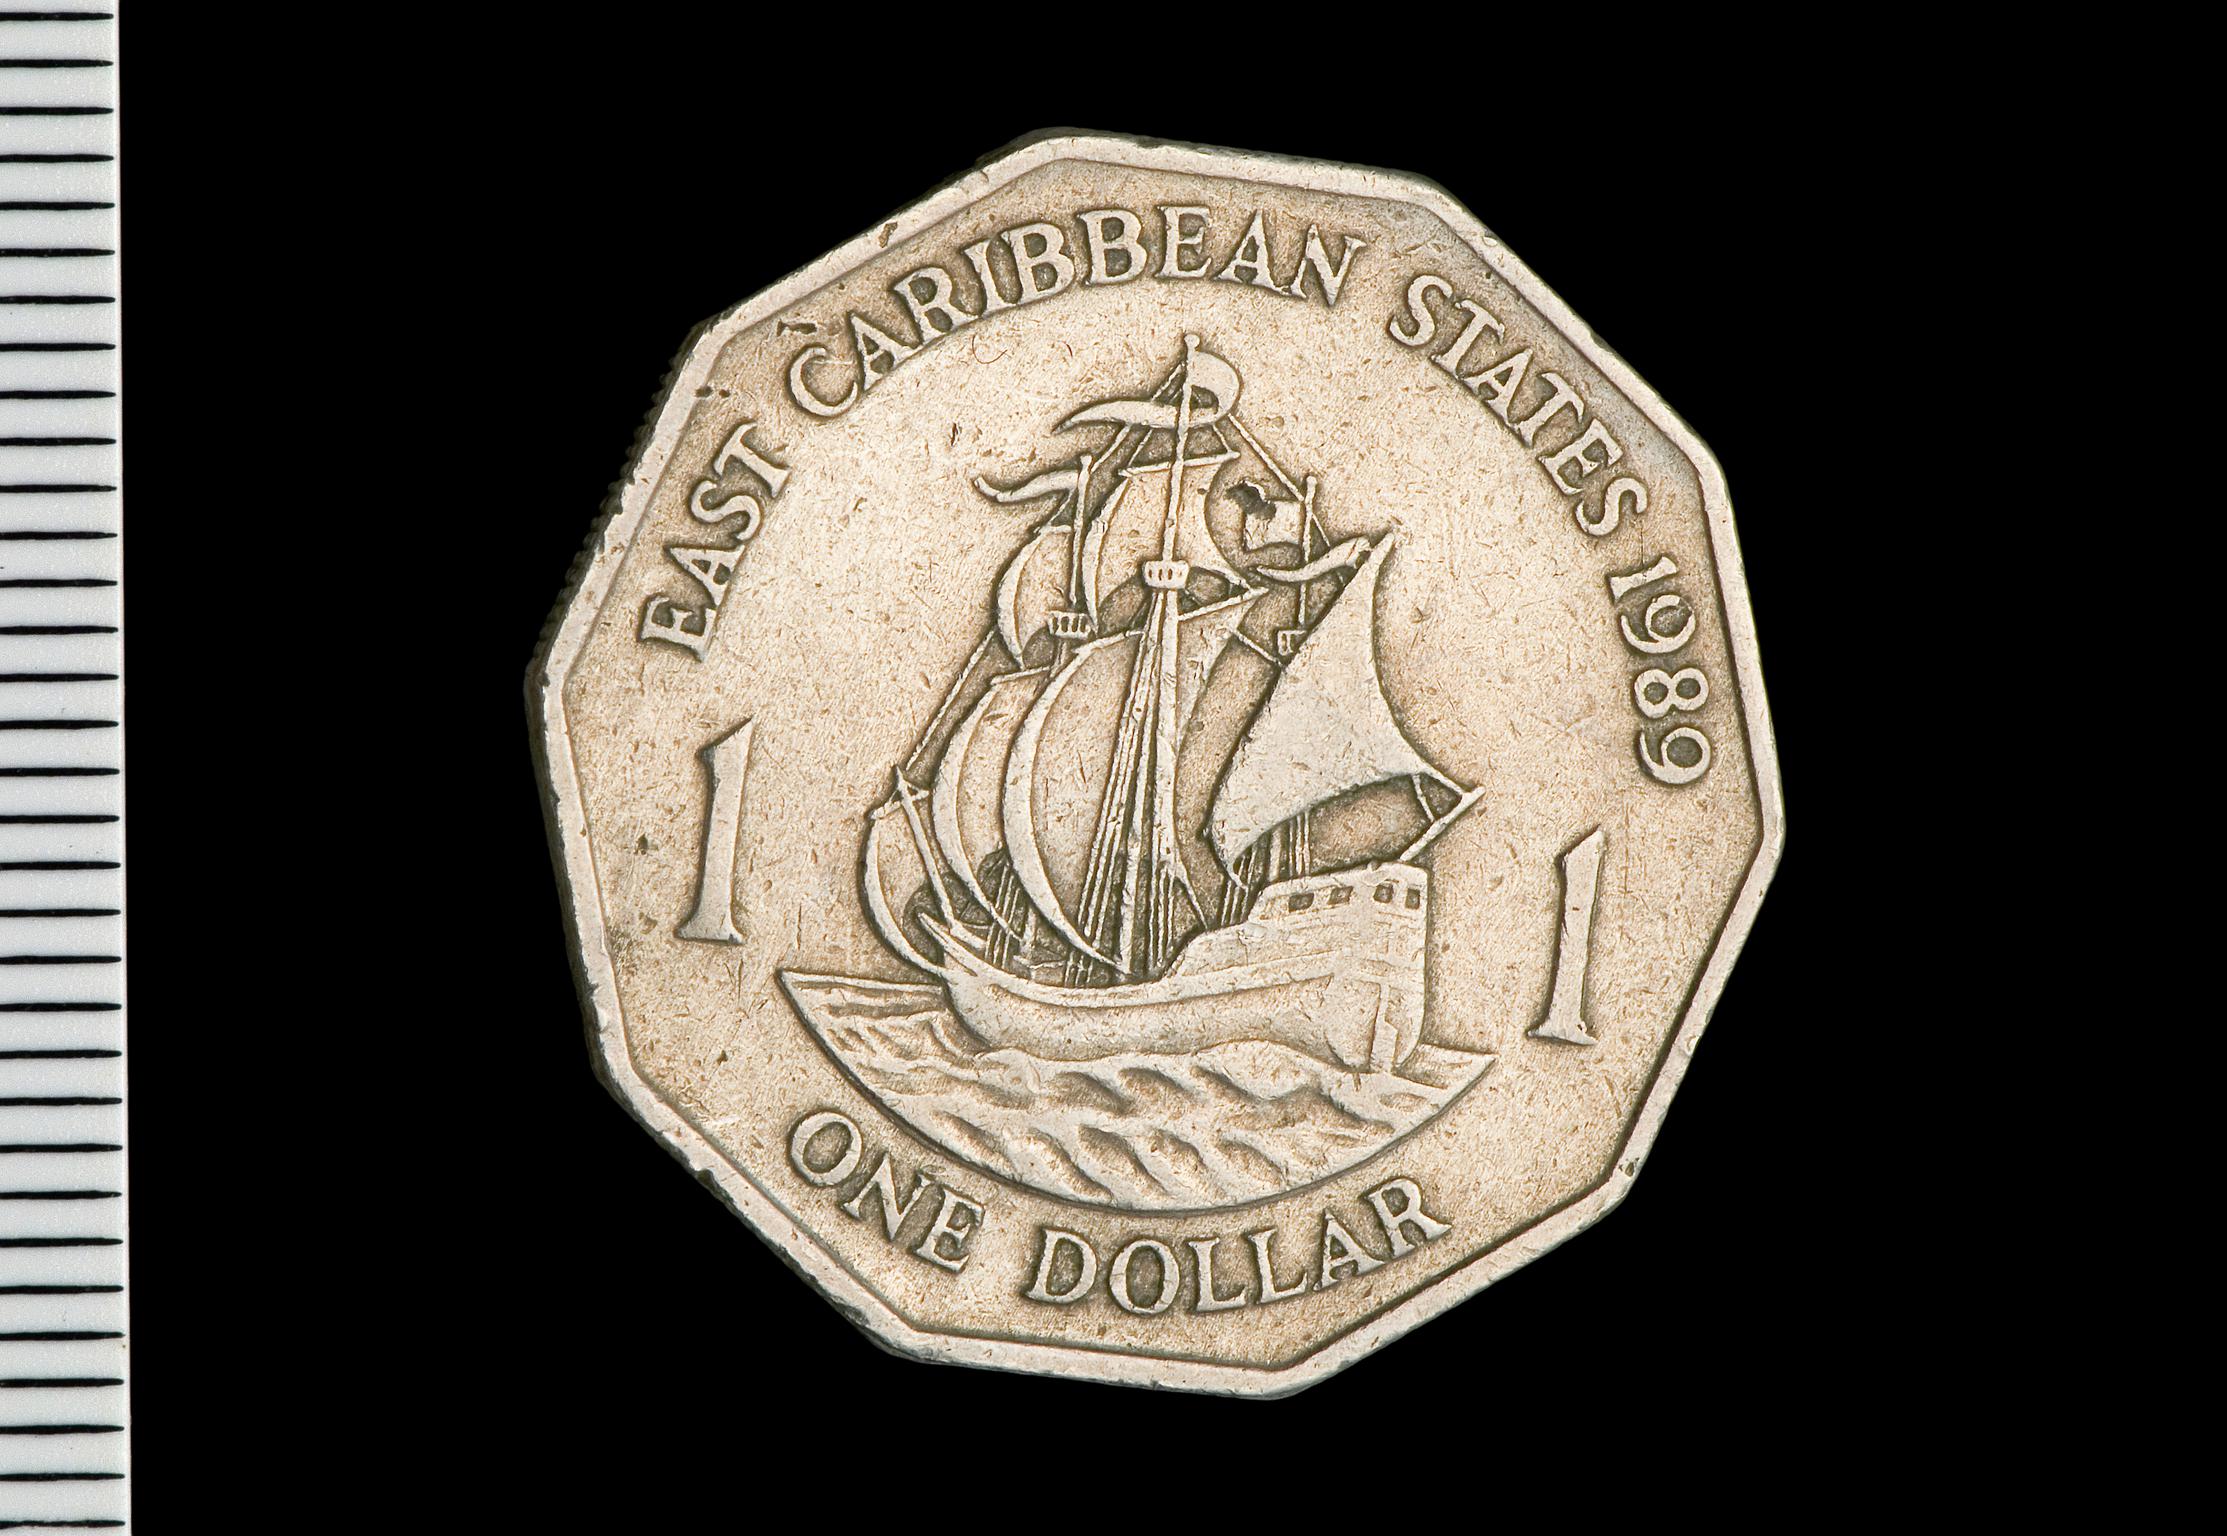 Elizabeth II dollar (East Caribbean States)